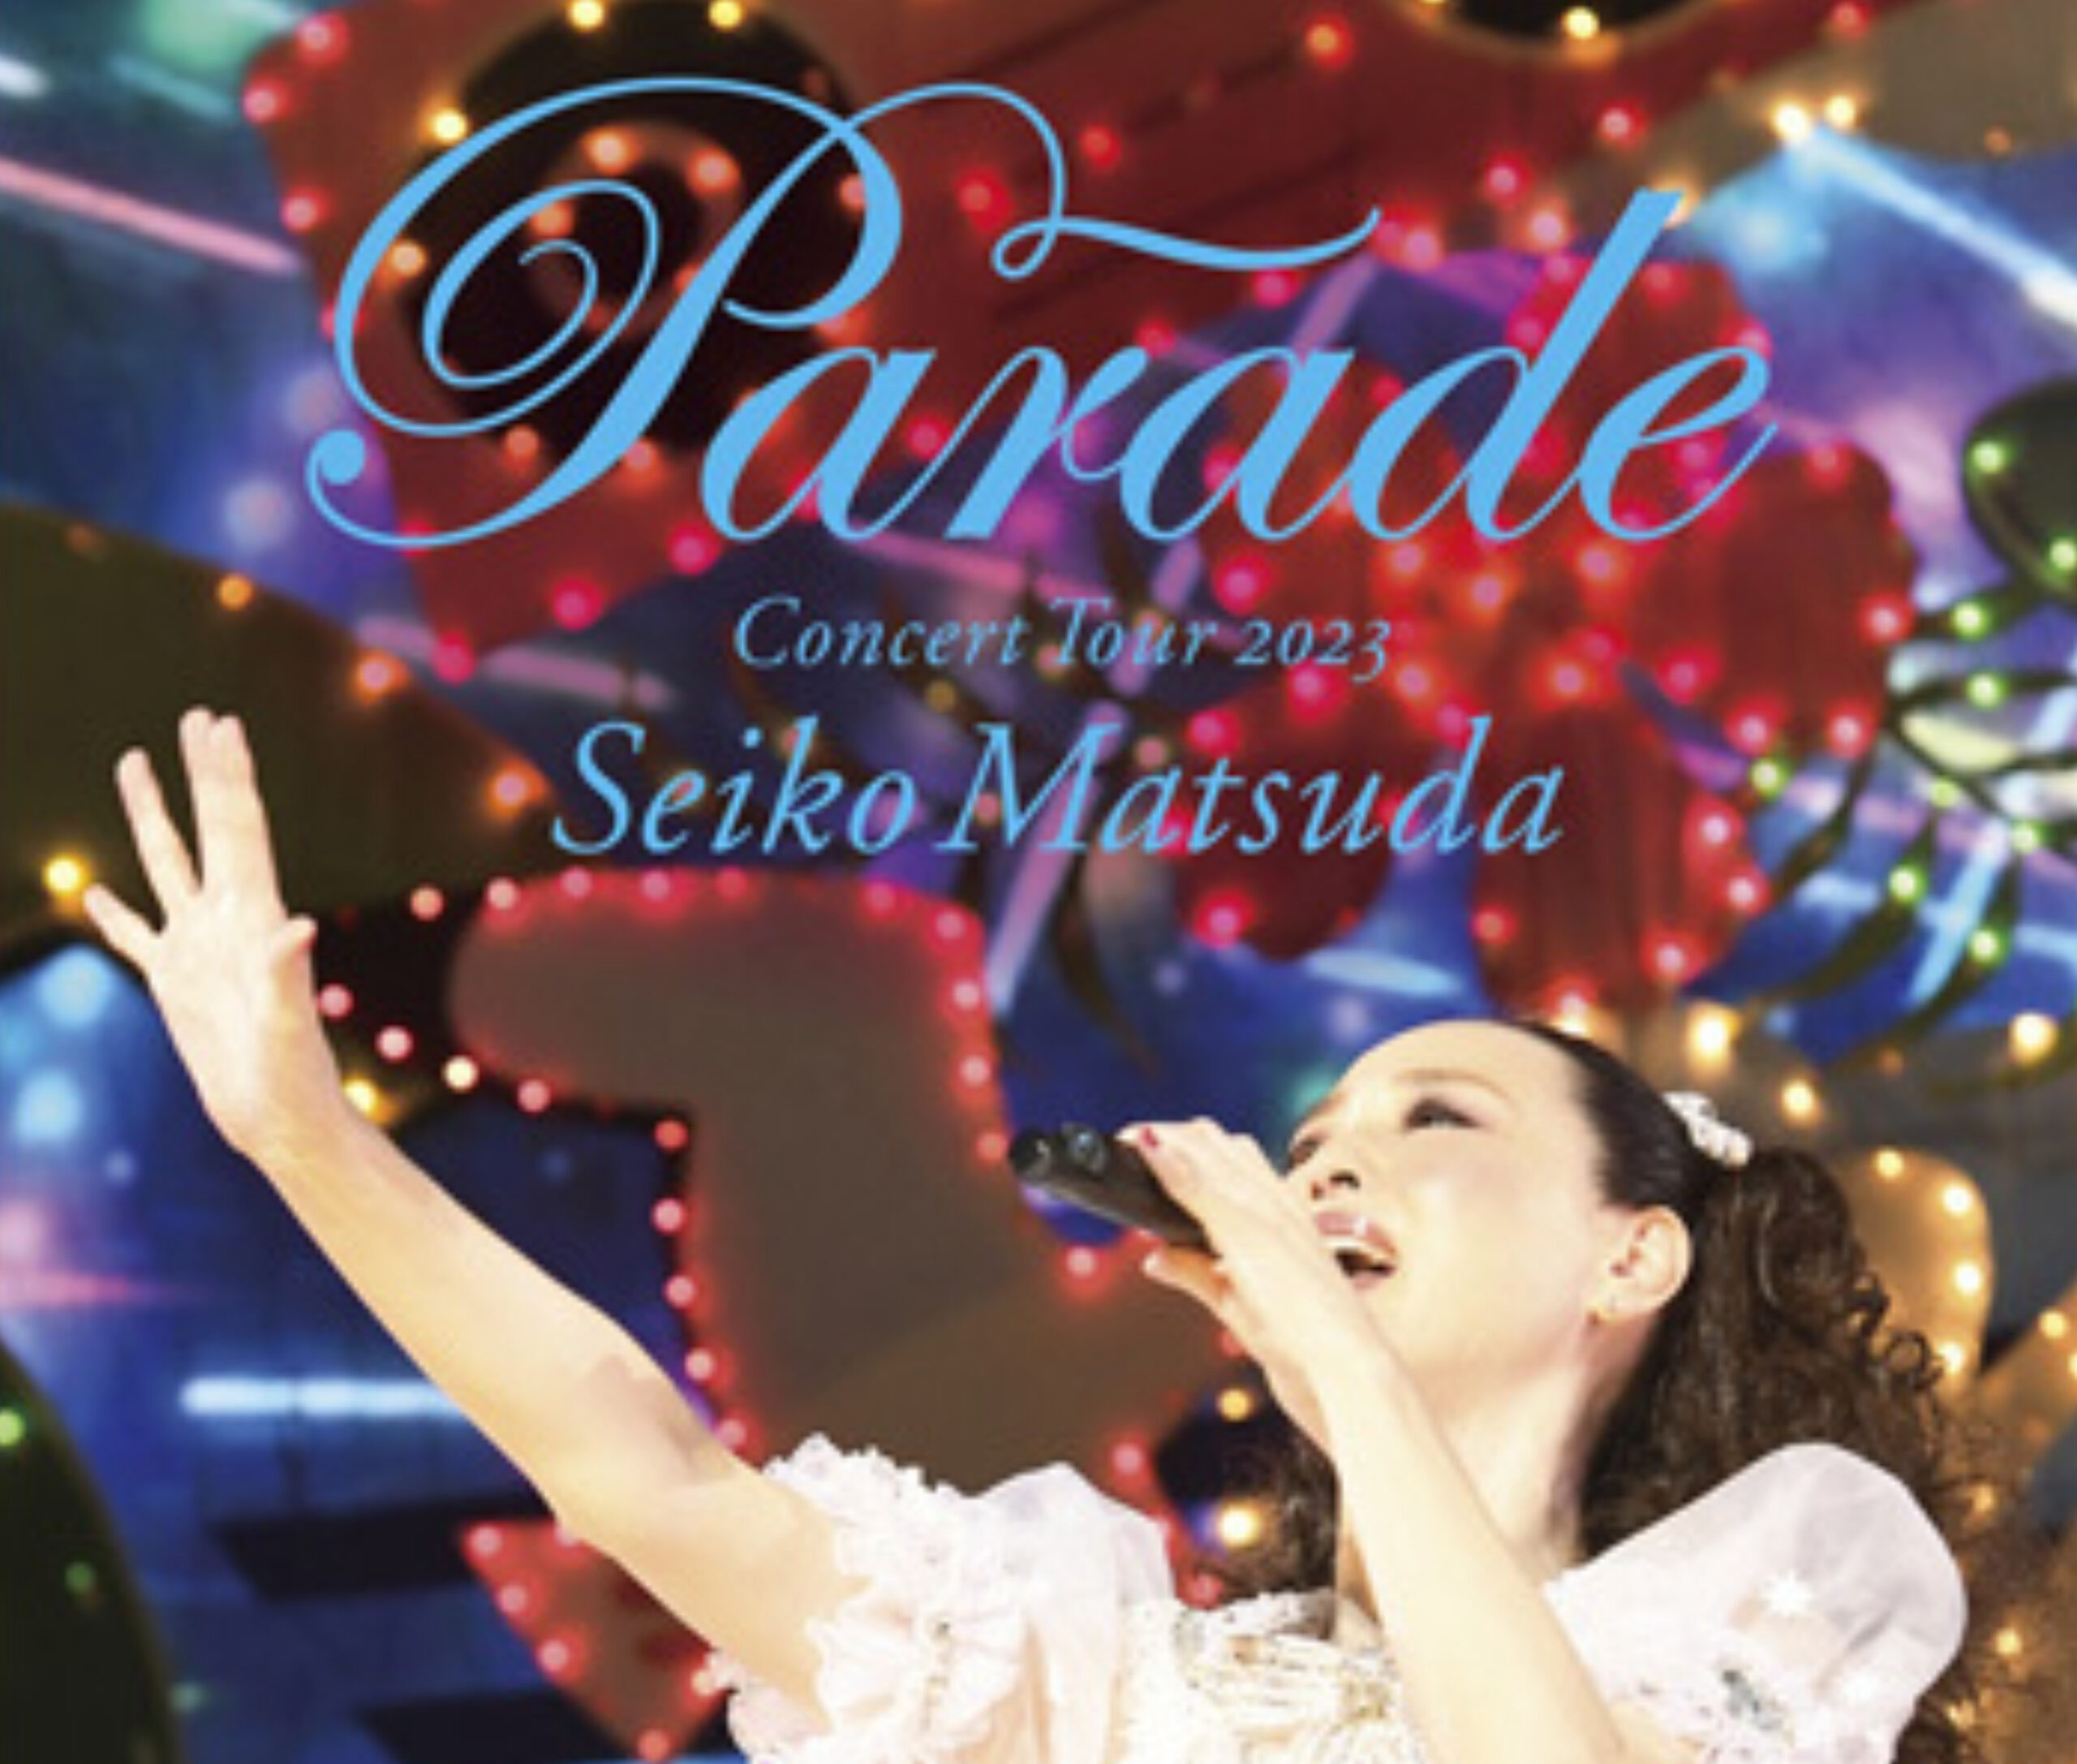 Seiko Matsuda Concert Tour 2023 “Parade” at NIPPON BUDOKAN | LIVE 